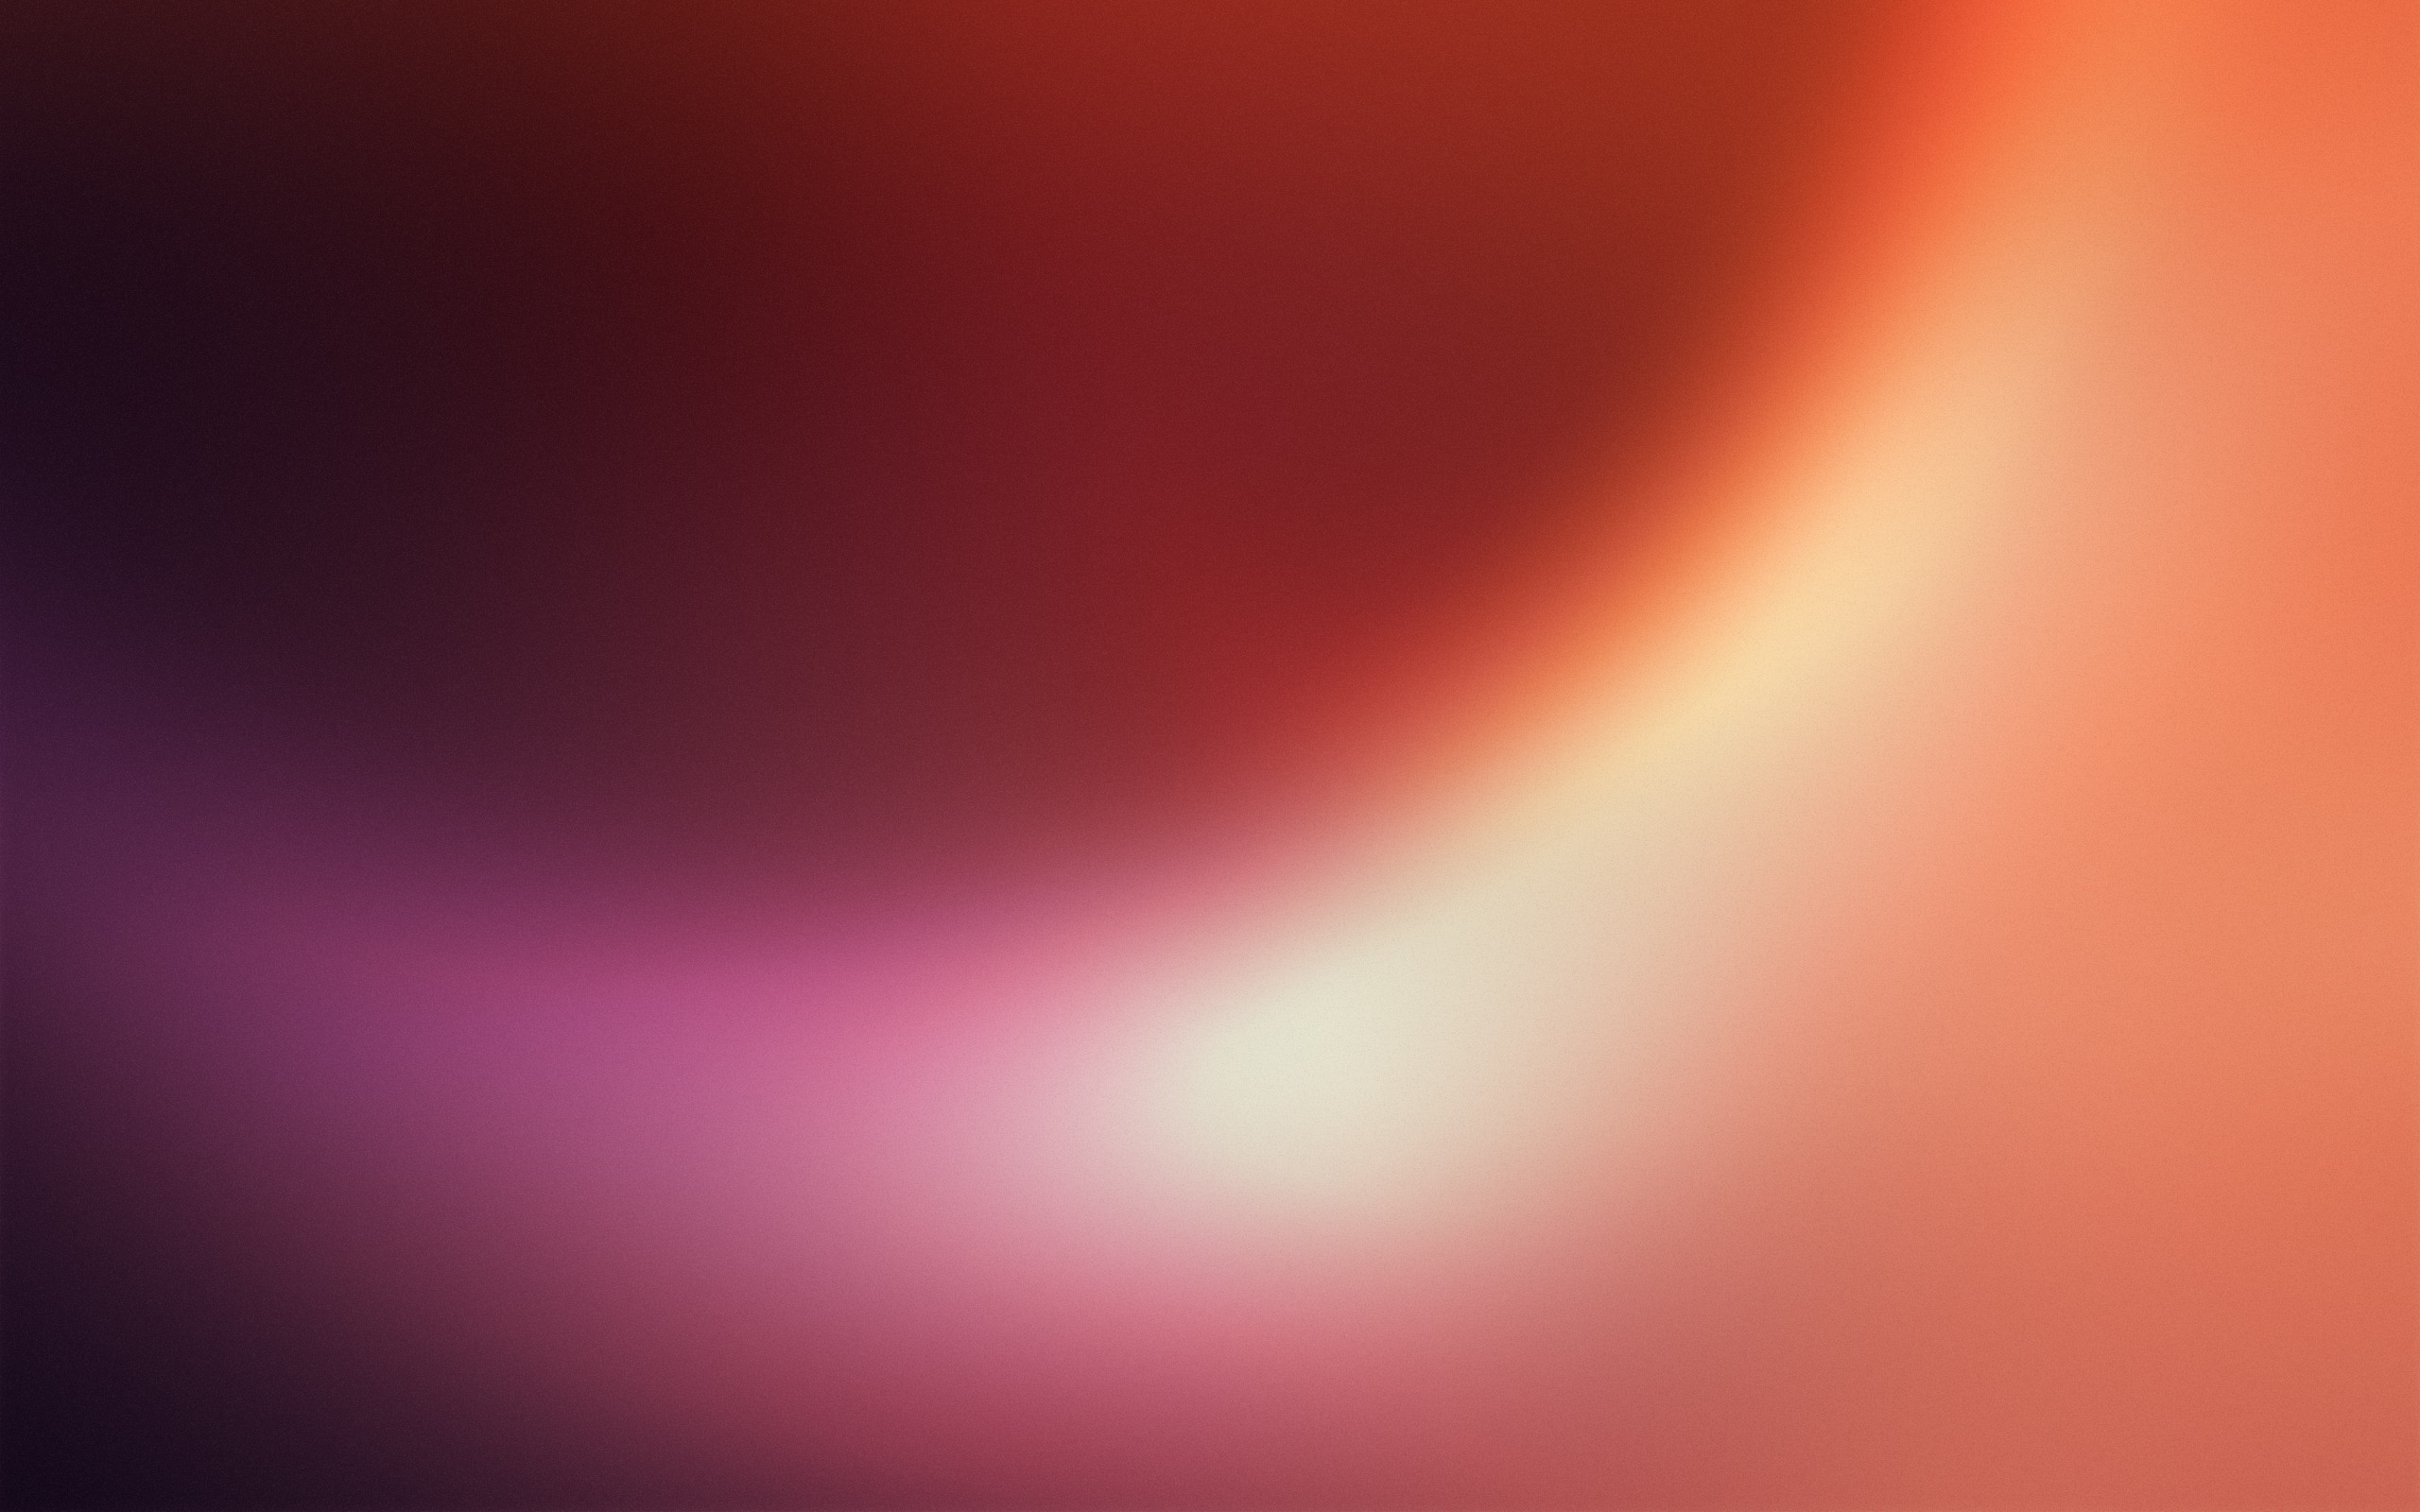 ubuntuの壁紙,赤,空,オレンジ,光,ピンク